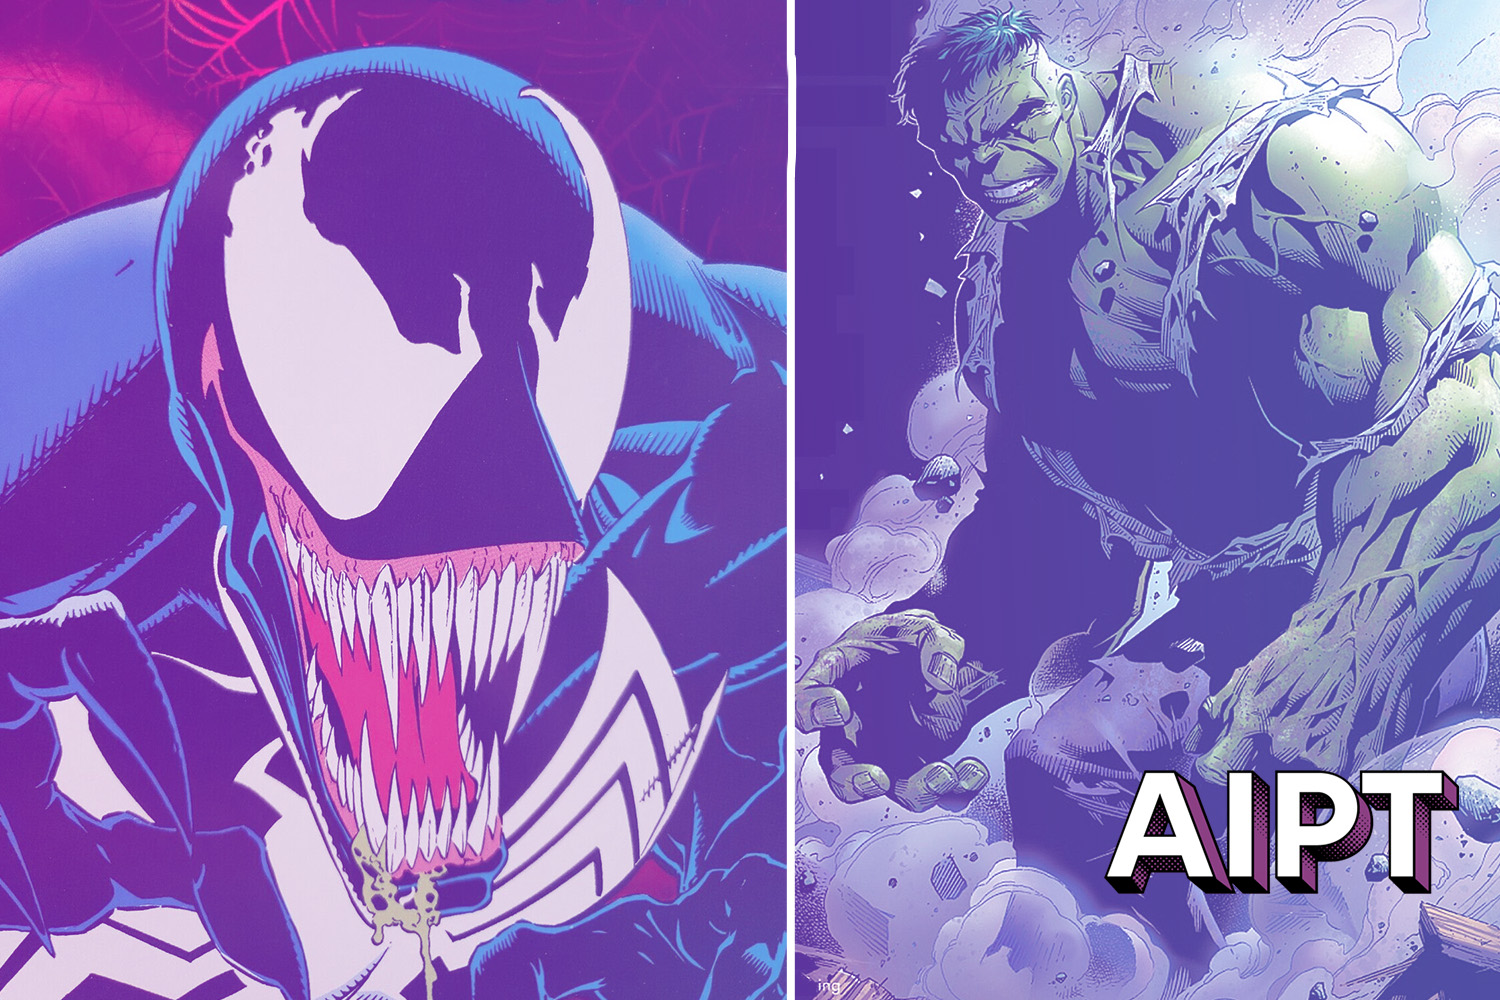 X-Men Senior Editor Jordan D. White reveals he's begun work on Venom and Hulk